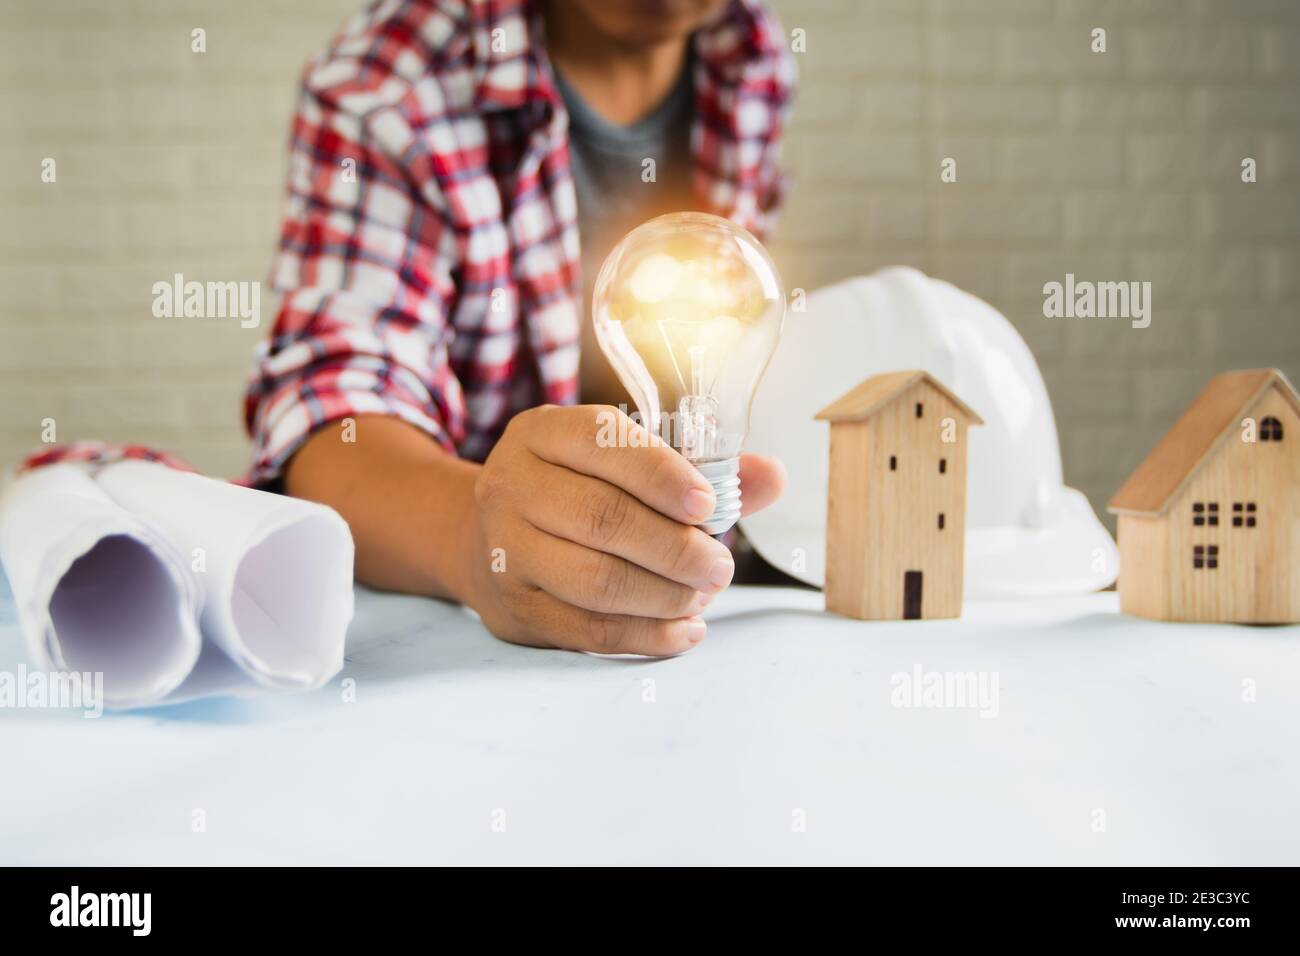 un ingénieur montre une ampoule avec un petit objet de construction et de maison outils sur la table Banque D'Images